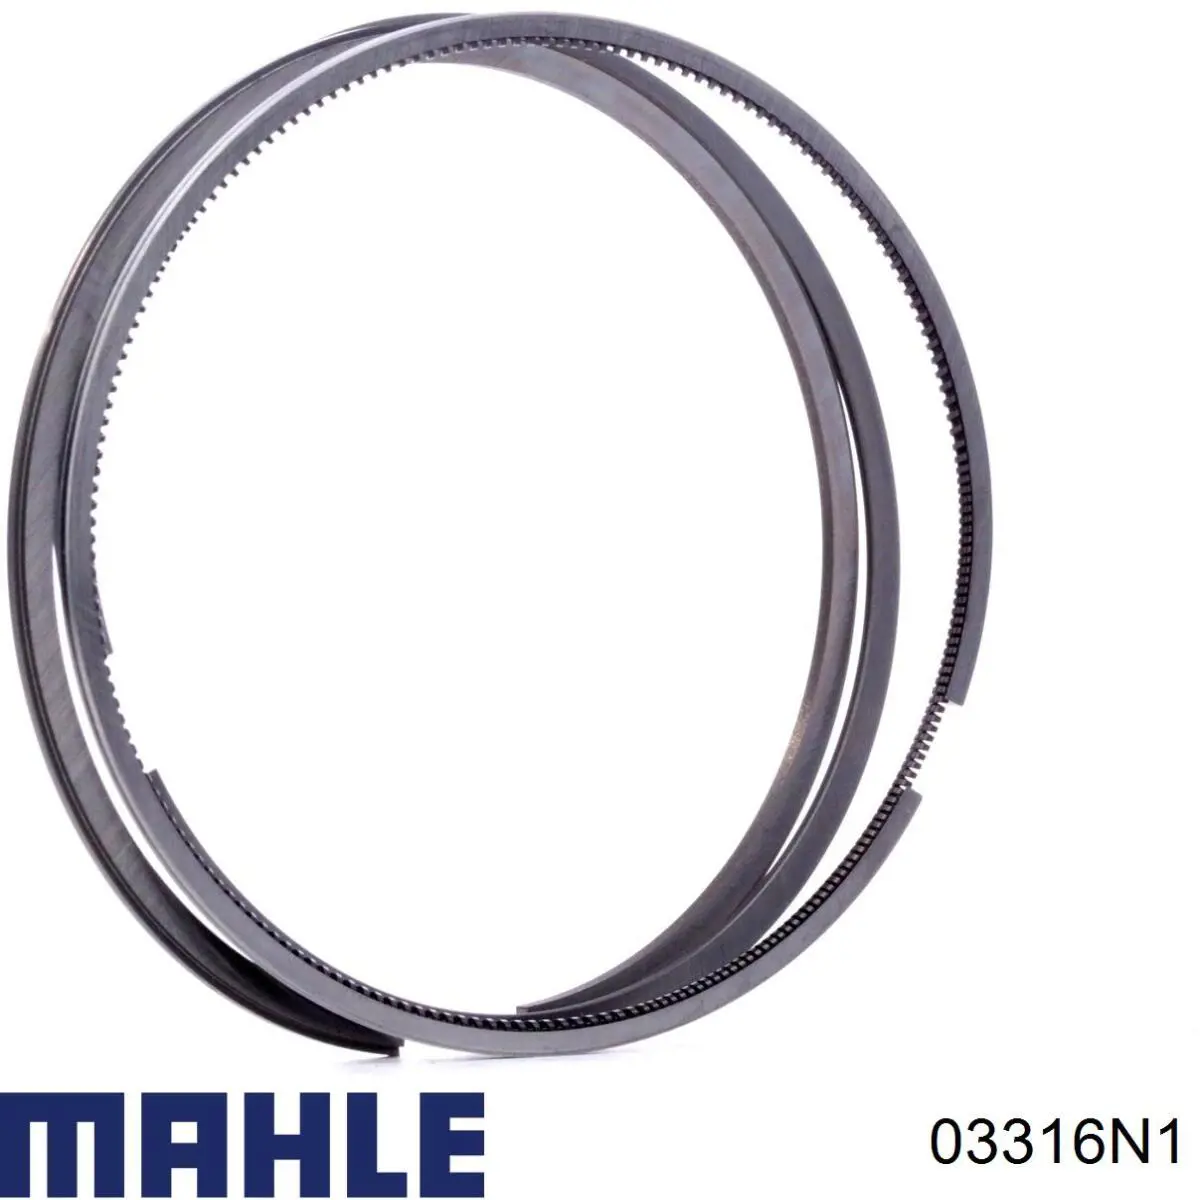 03316N1 Mahle Original кольца поршневые на 1 цилиндр, 1-й ремонт (+0,25)